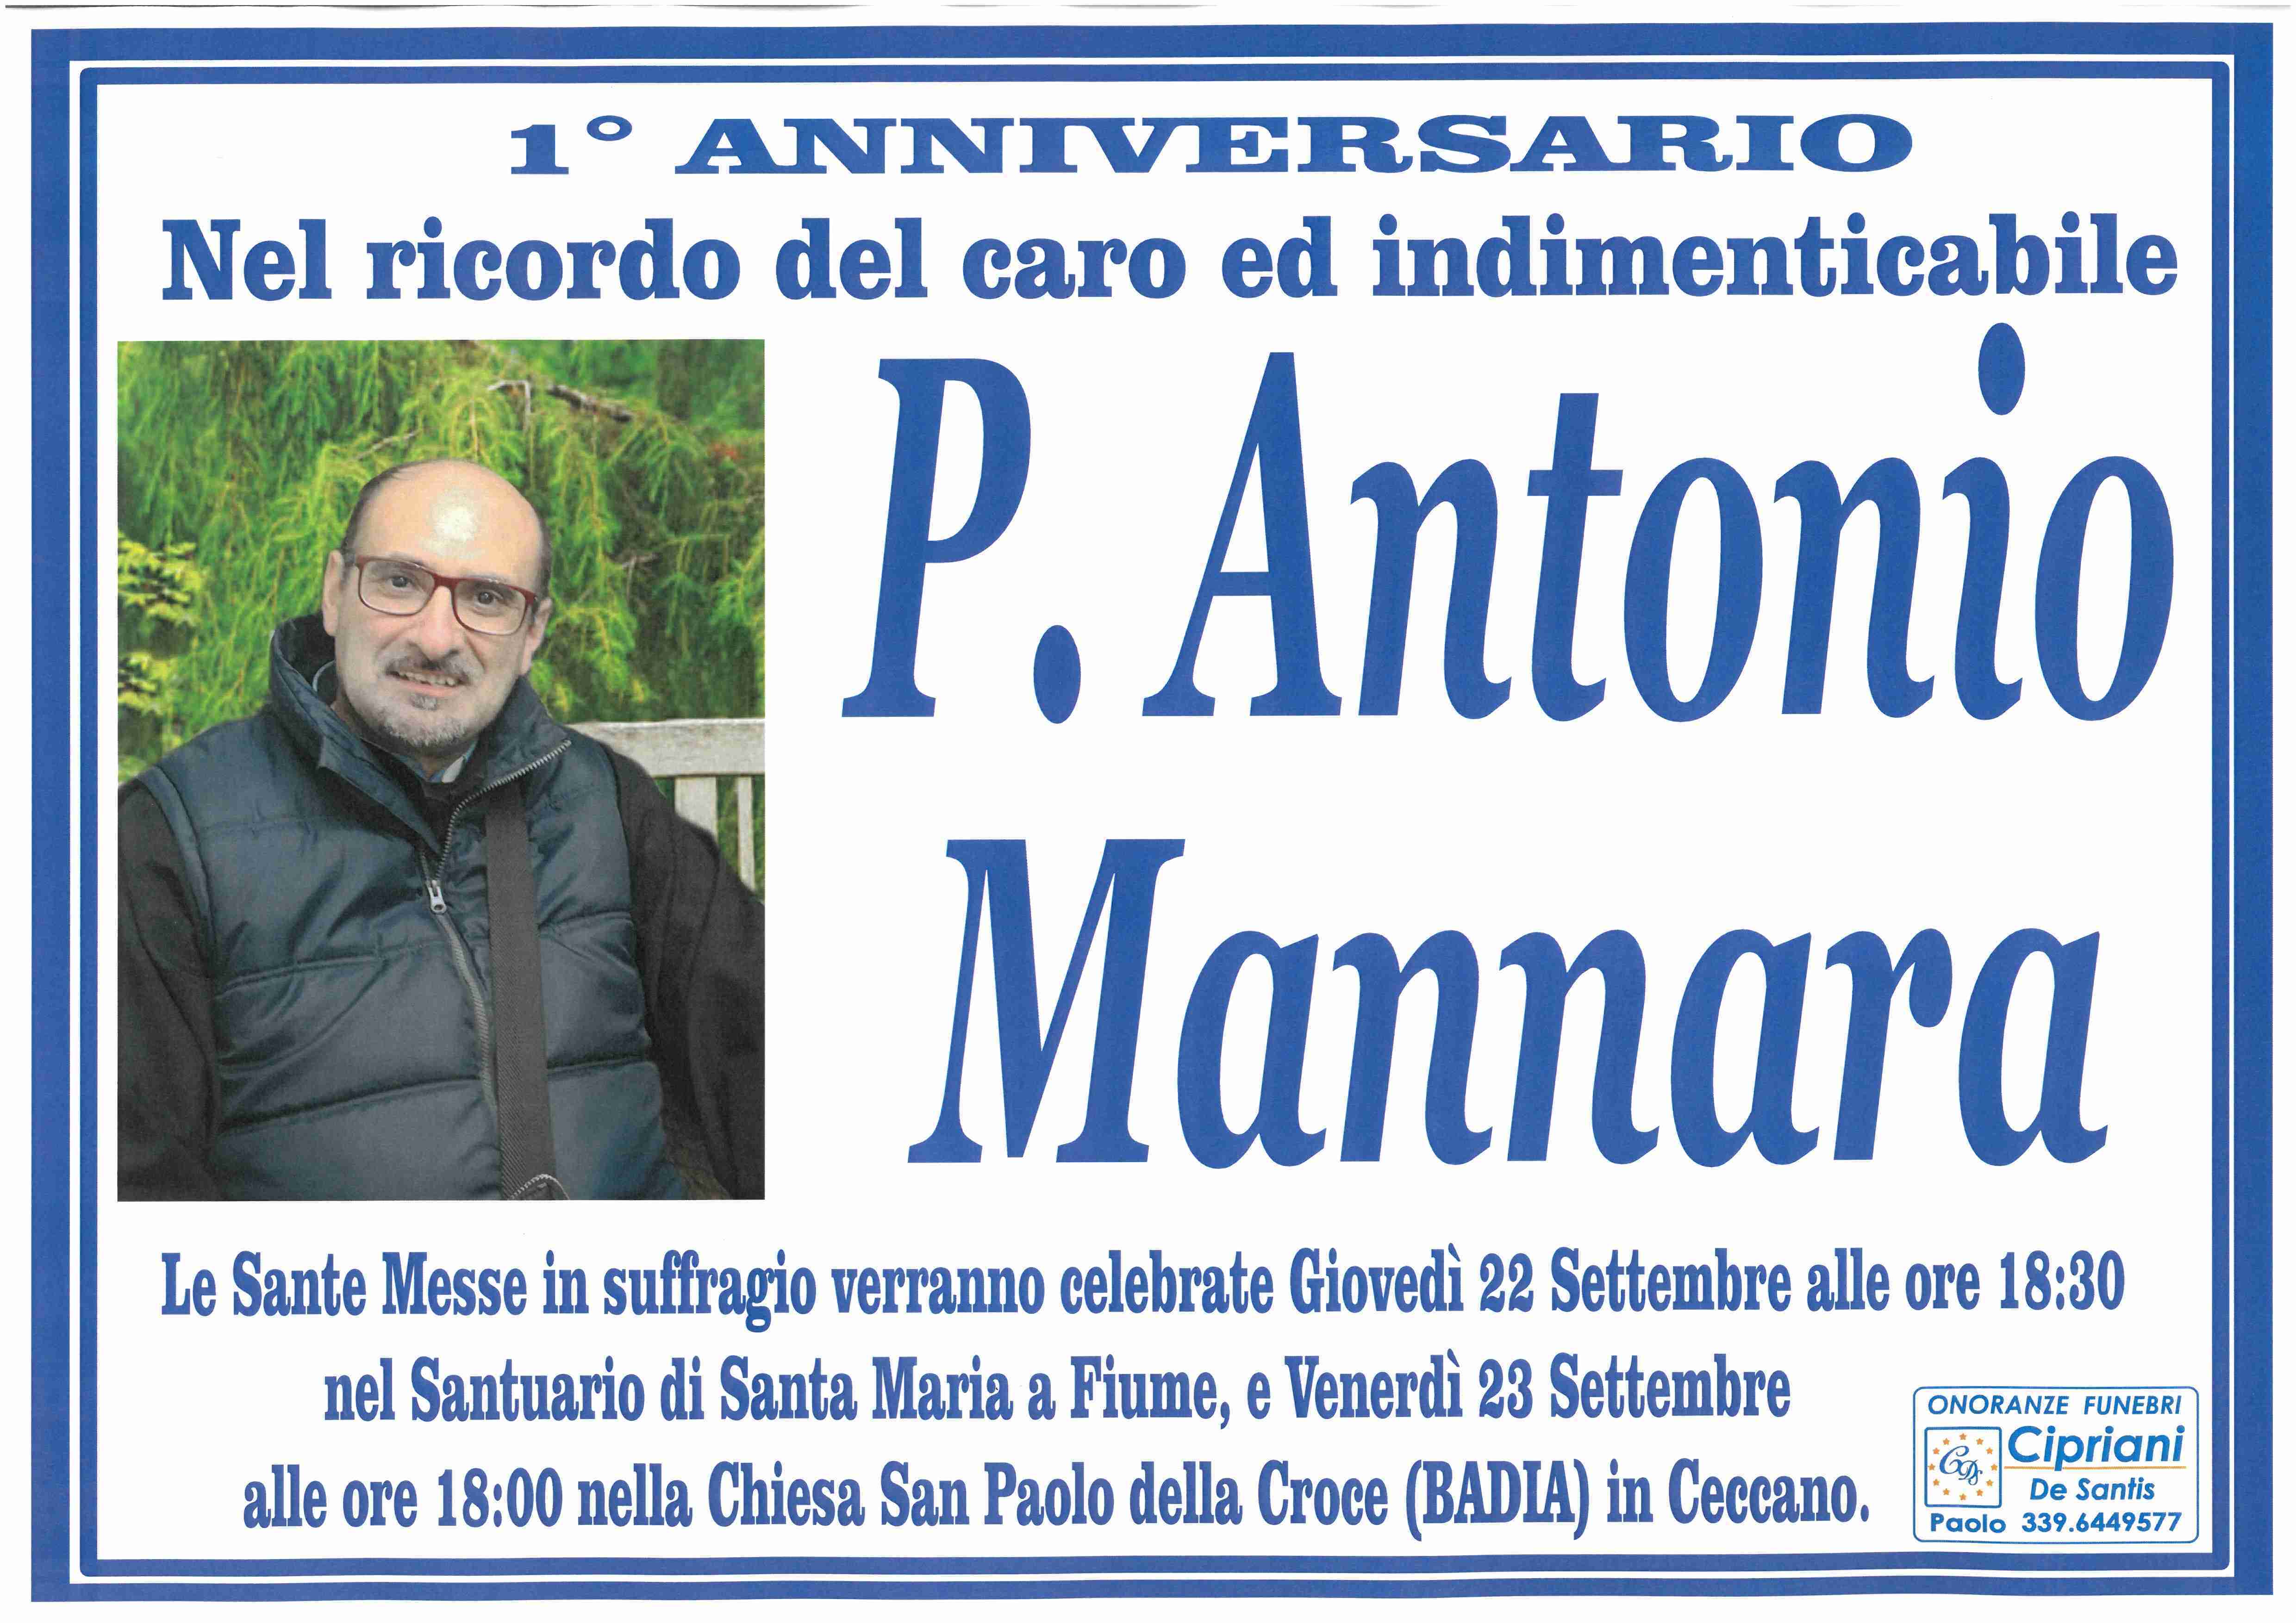 Padre Antonio Mannara